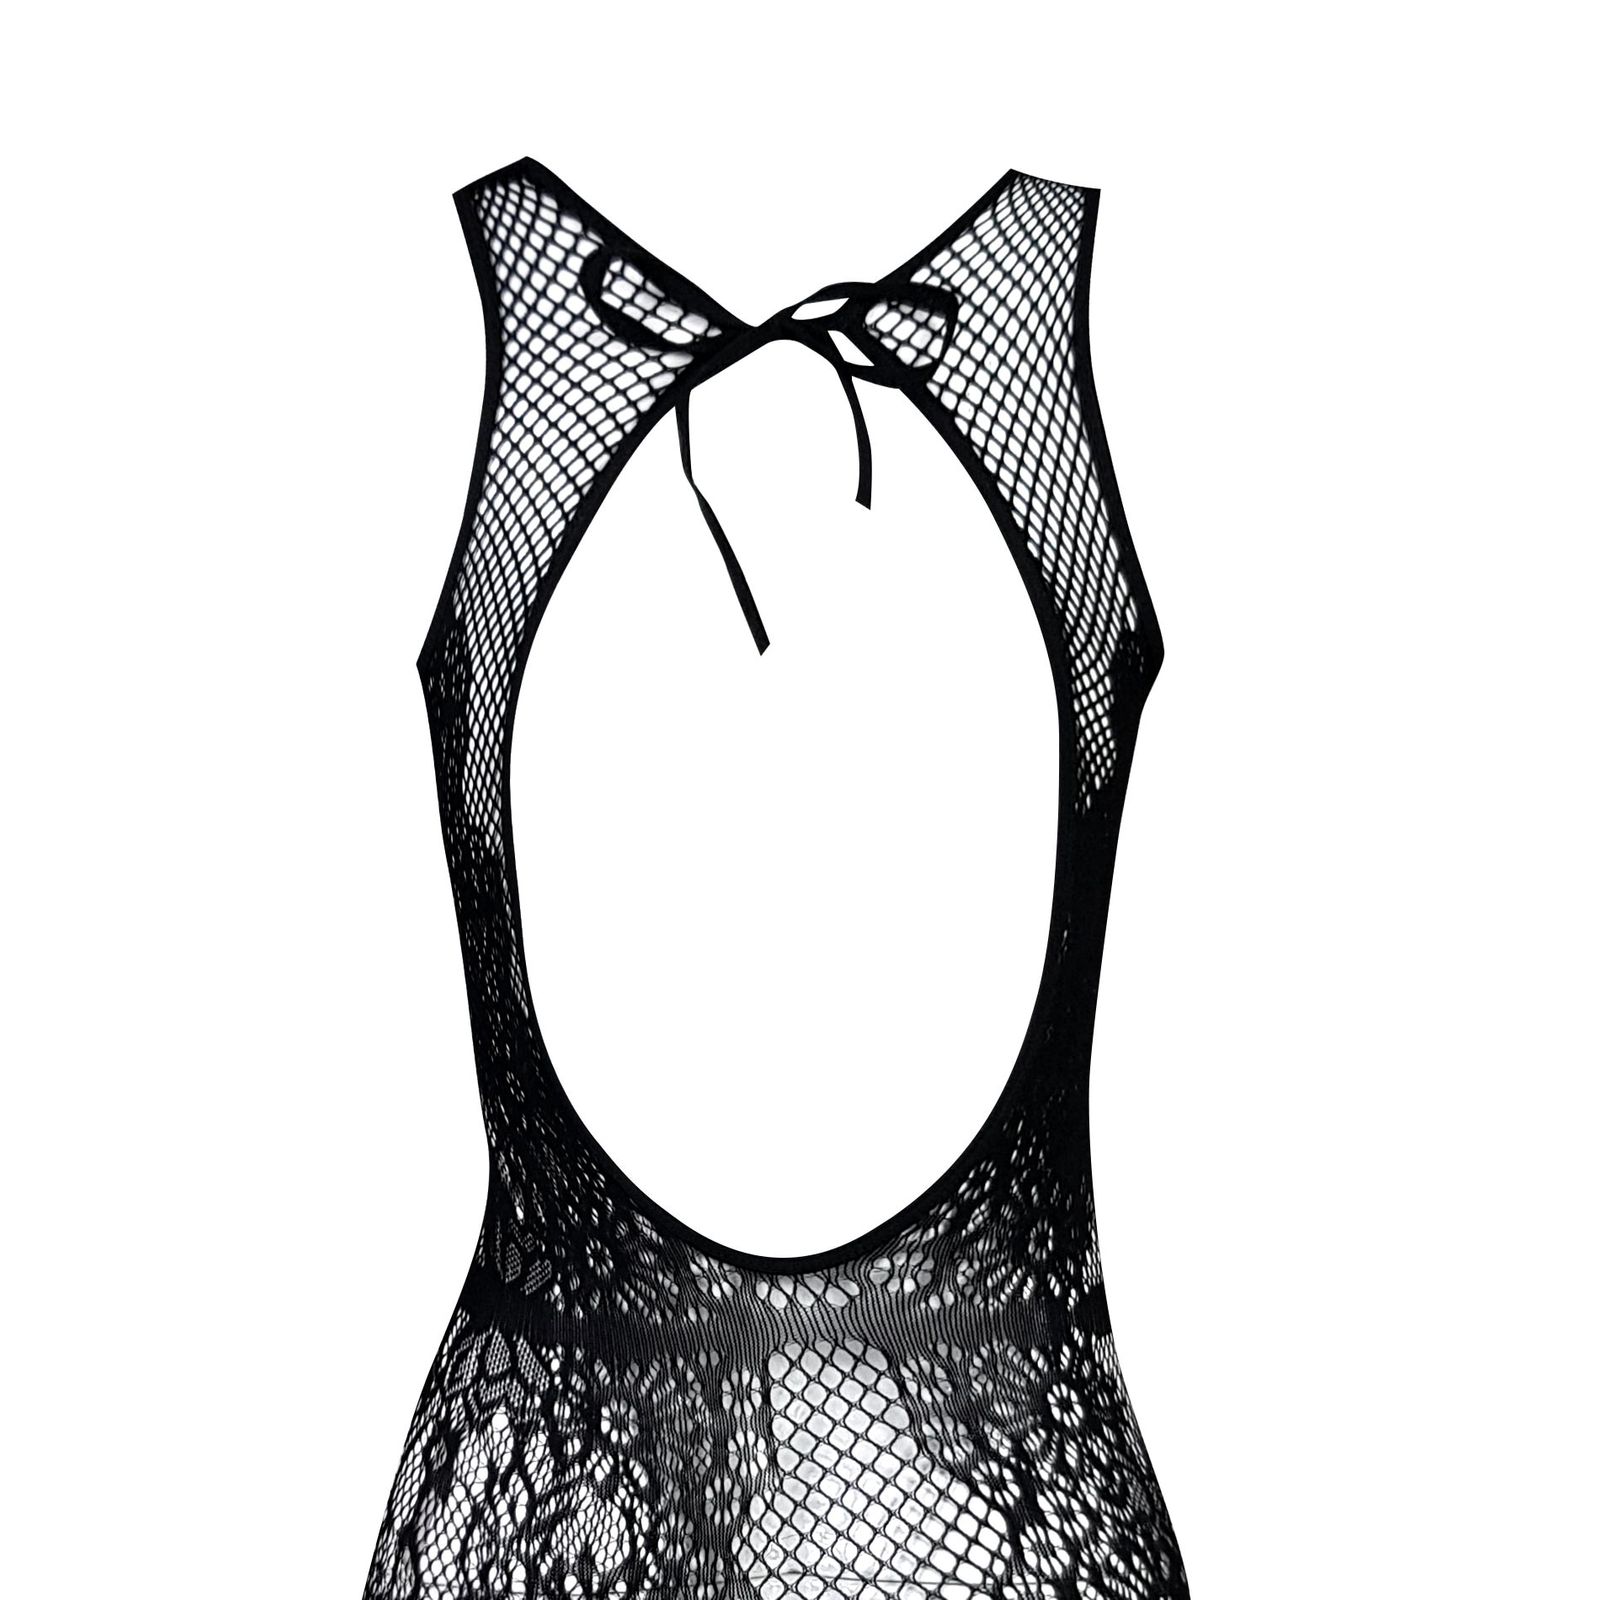 لباس خواب زنانه ماییلدا مدل فانتزی کد 4622-5004 رنگ مشکی -  - 3